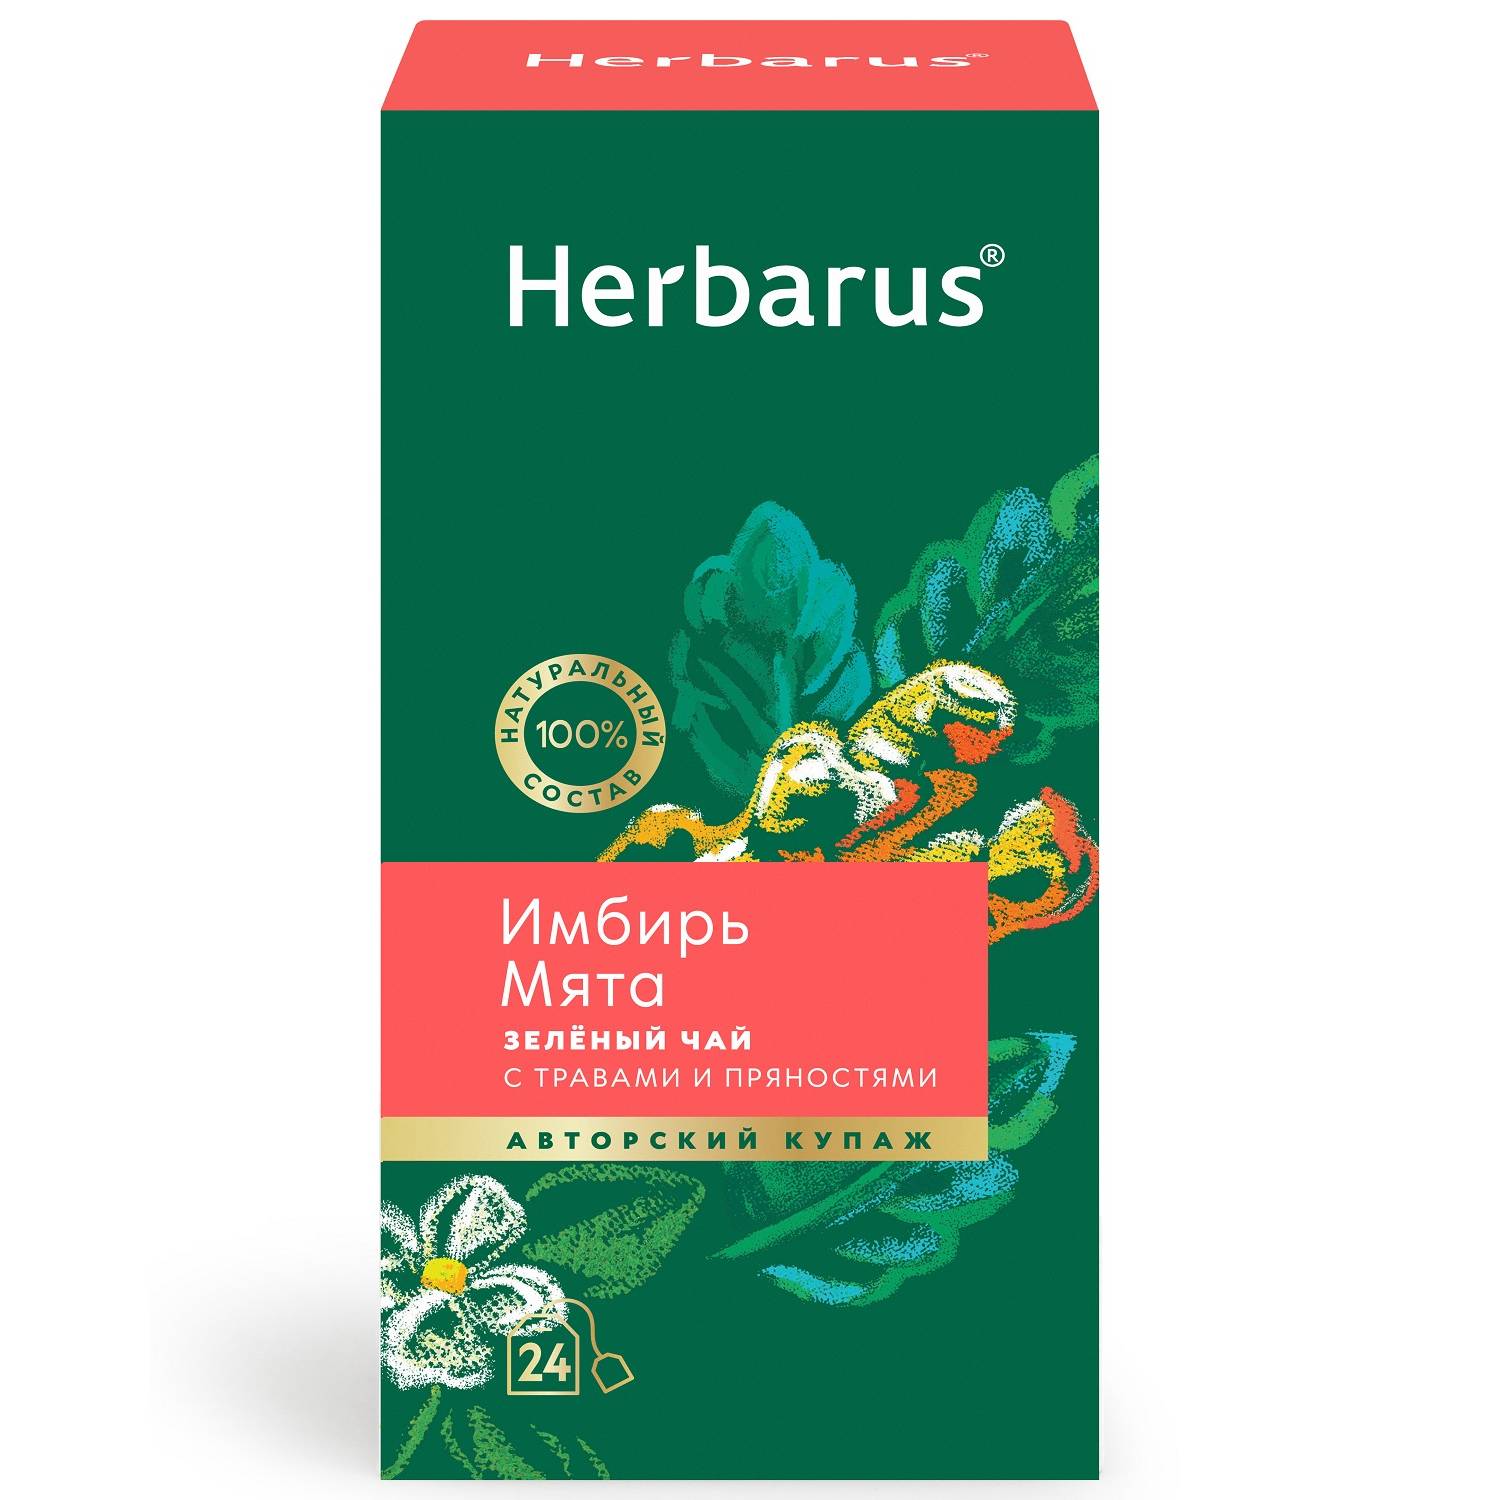 Herbarus Зеленый чай с травами и пряностями Имбирь и мята, 24 пакетика (Herbarus, Чай с добавками) herbarus чай улун с добавками мятный спокойный 24 шт х 2 г herbarus чай с добавками